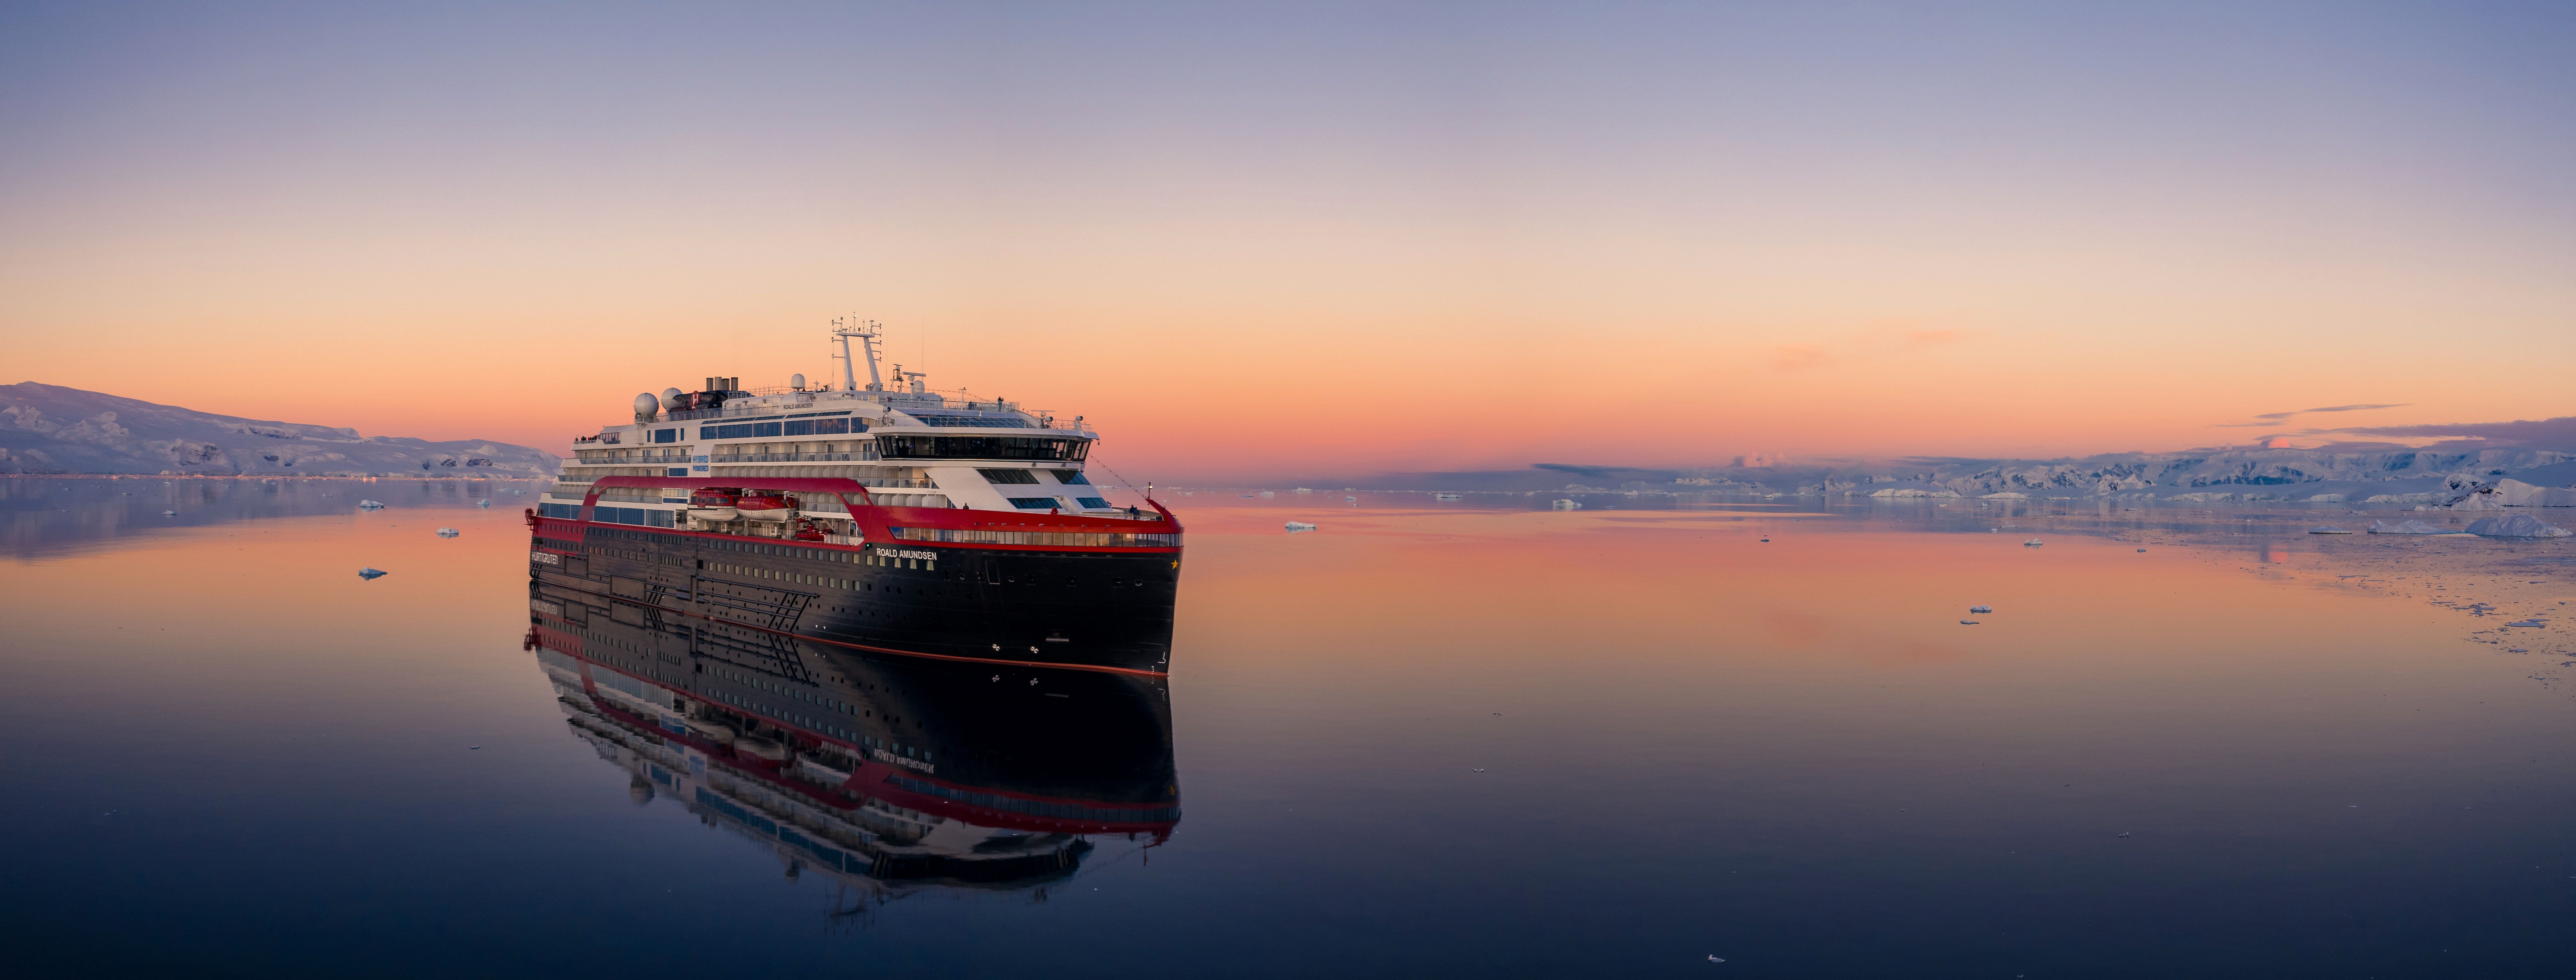 Oppdag eksotiske steder med Ekspedisjonsreiser Hurtigruten